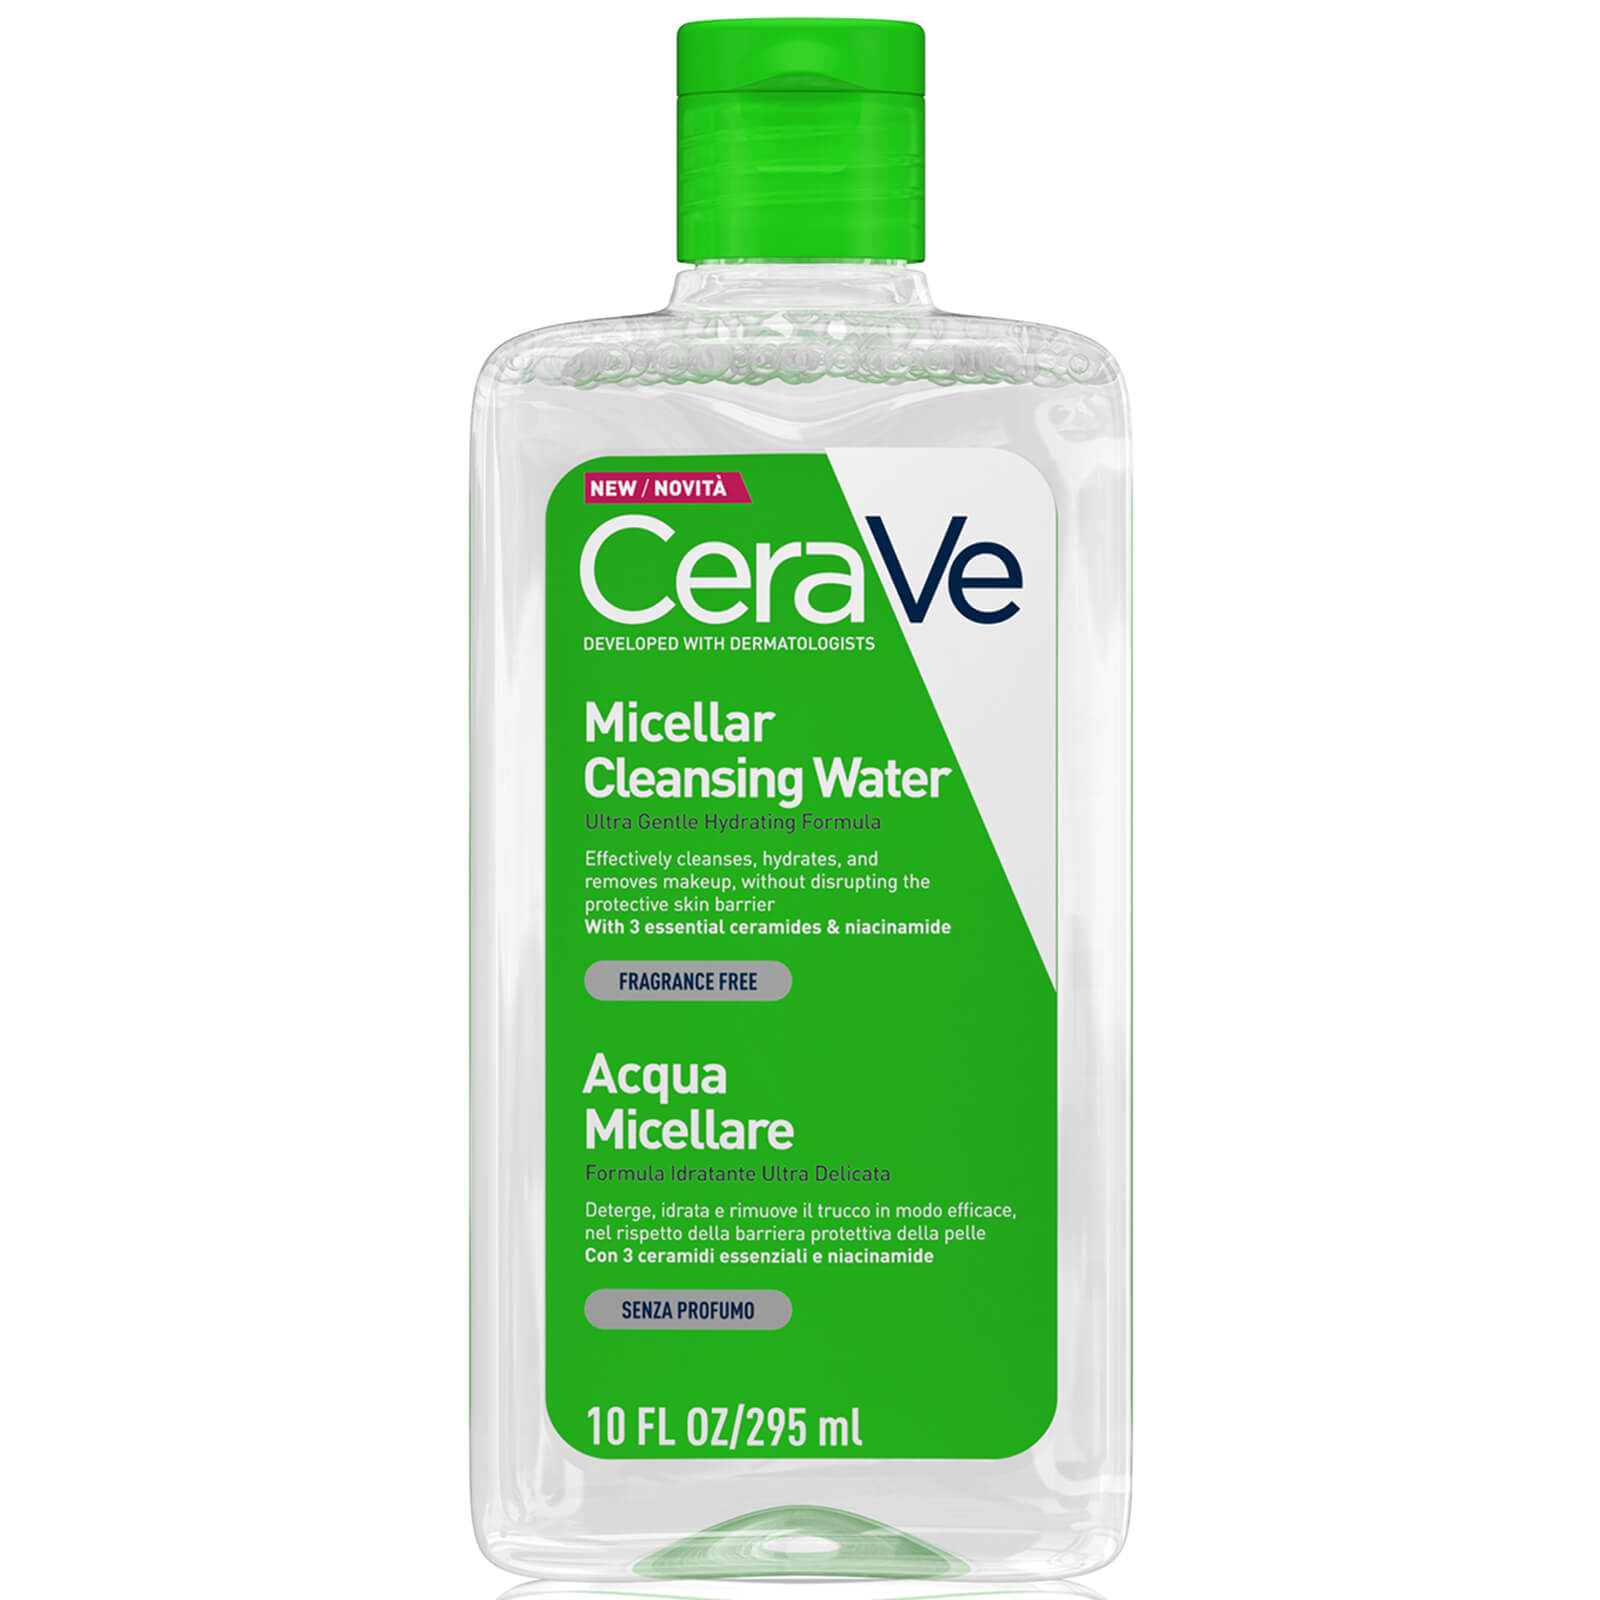 Image of CeraVe Acqua Micellare Detergente con Niacinamide & Ceramides per tutti i tipi di pelle 295ml